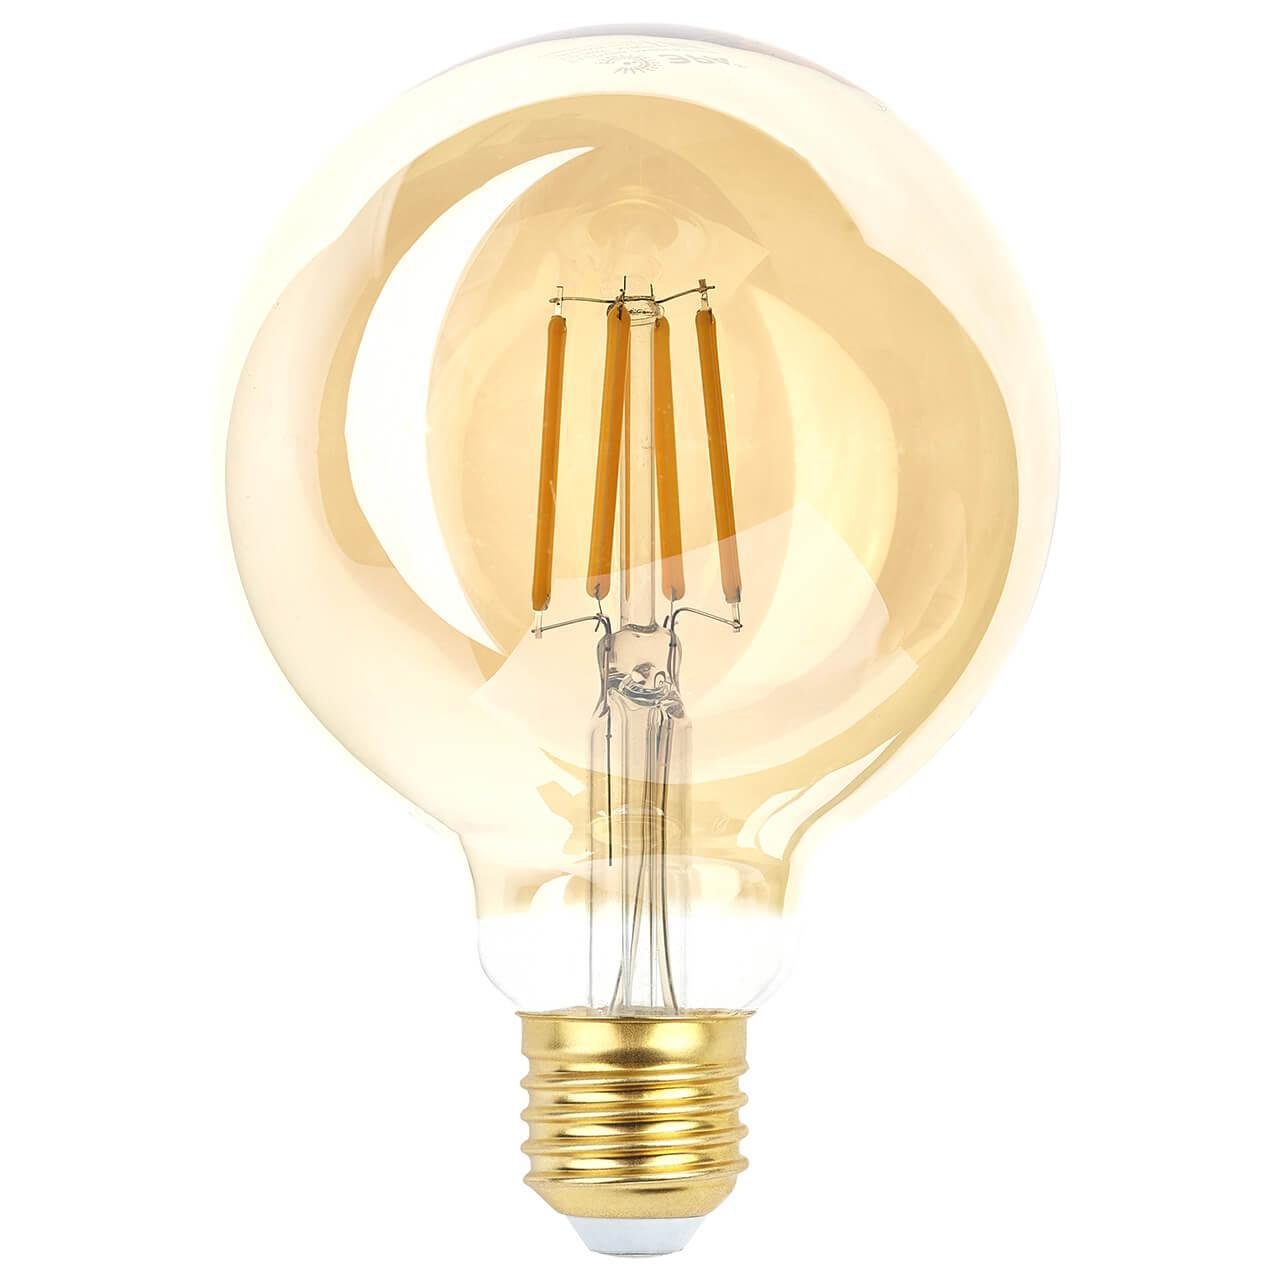 Филаментная led лампа. Лампа светодиодная филаментная e27. F-led g95-7w-824-e27 Gold. F-led g95-7w-824-e27 Spiral Gold. Филаментная лампа e27 золото.